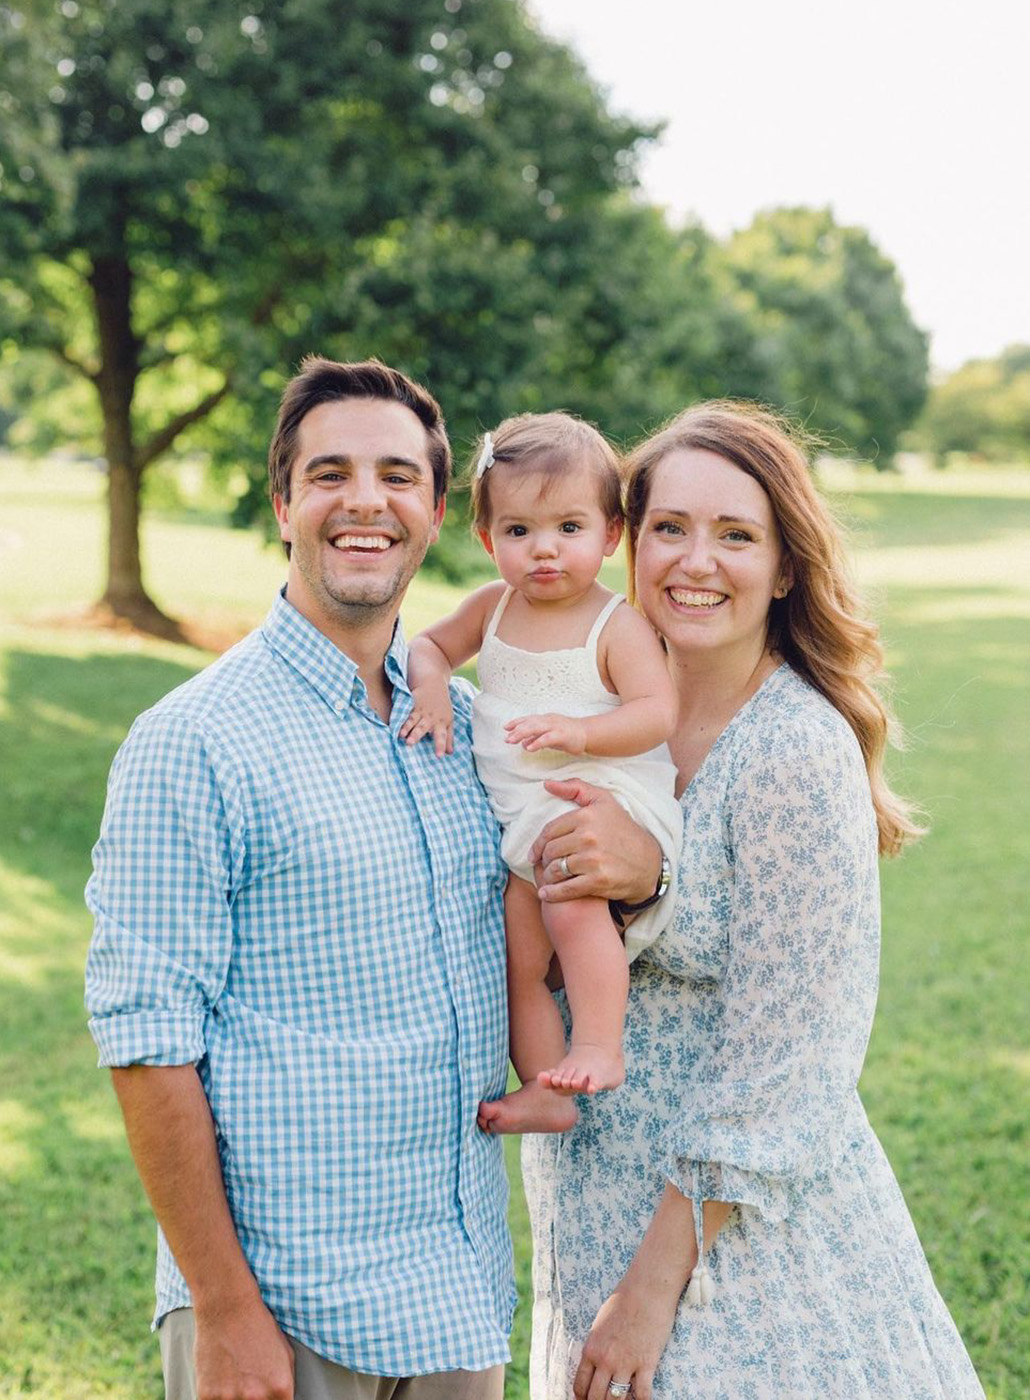 Jennifer Shugh, gerente de projetos da OneTrust, posando para uma foto com a família em um ambiente externo